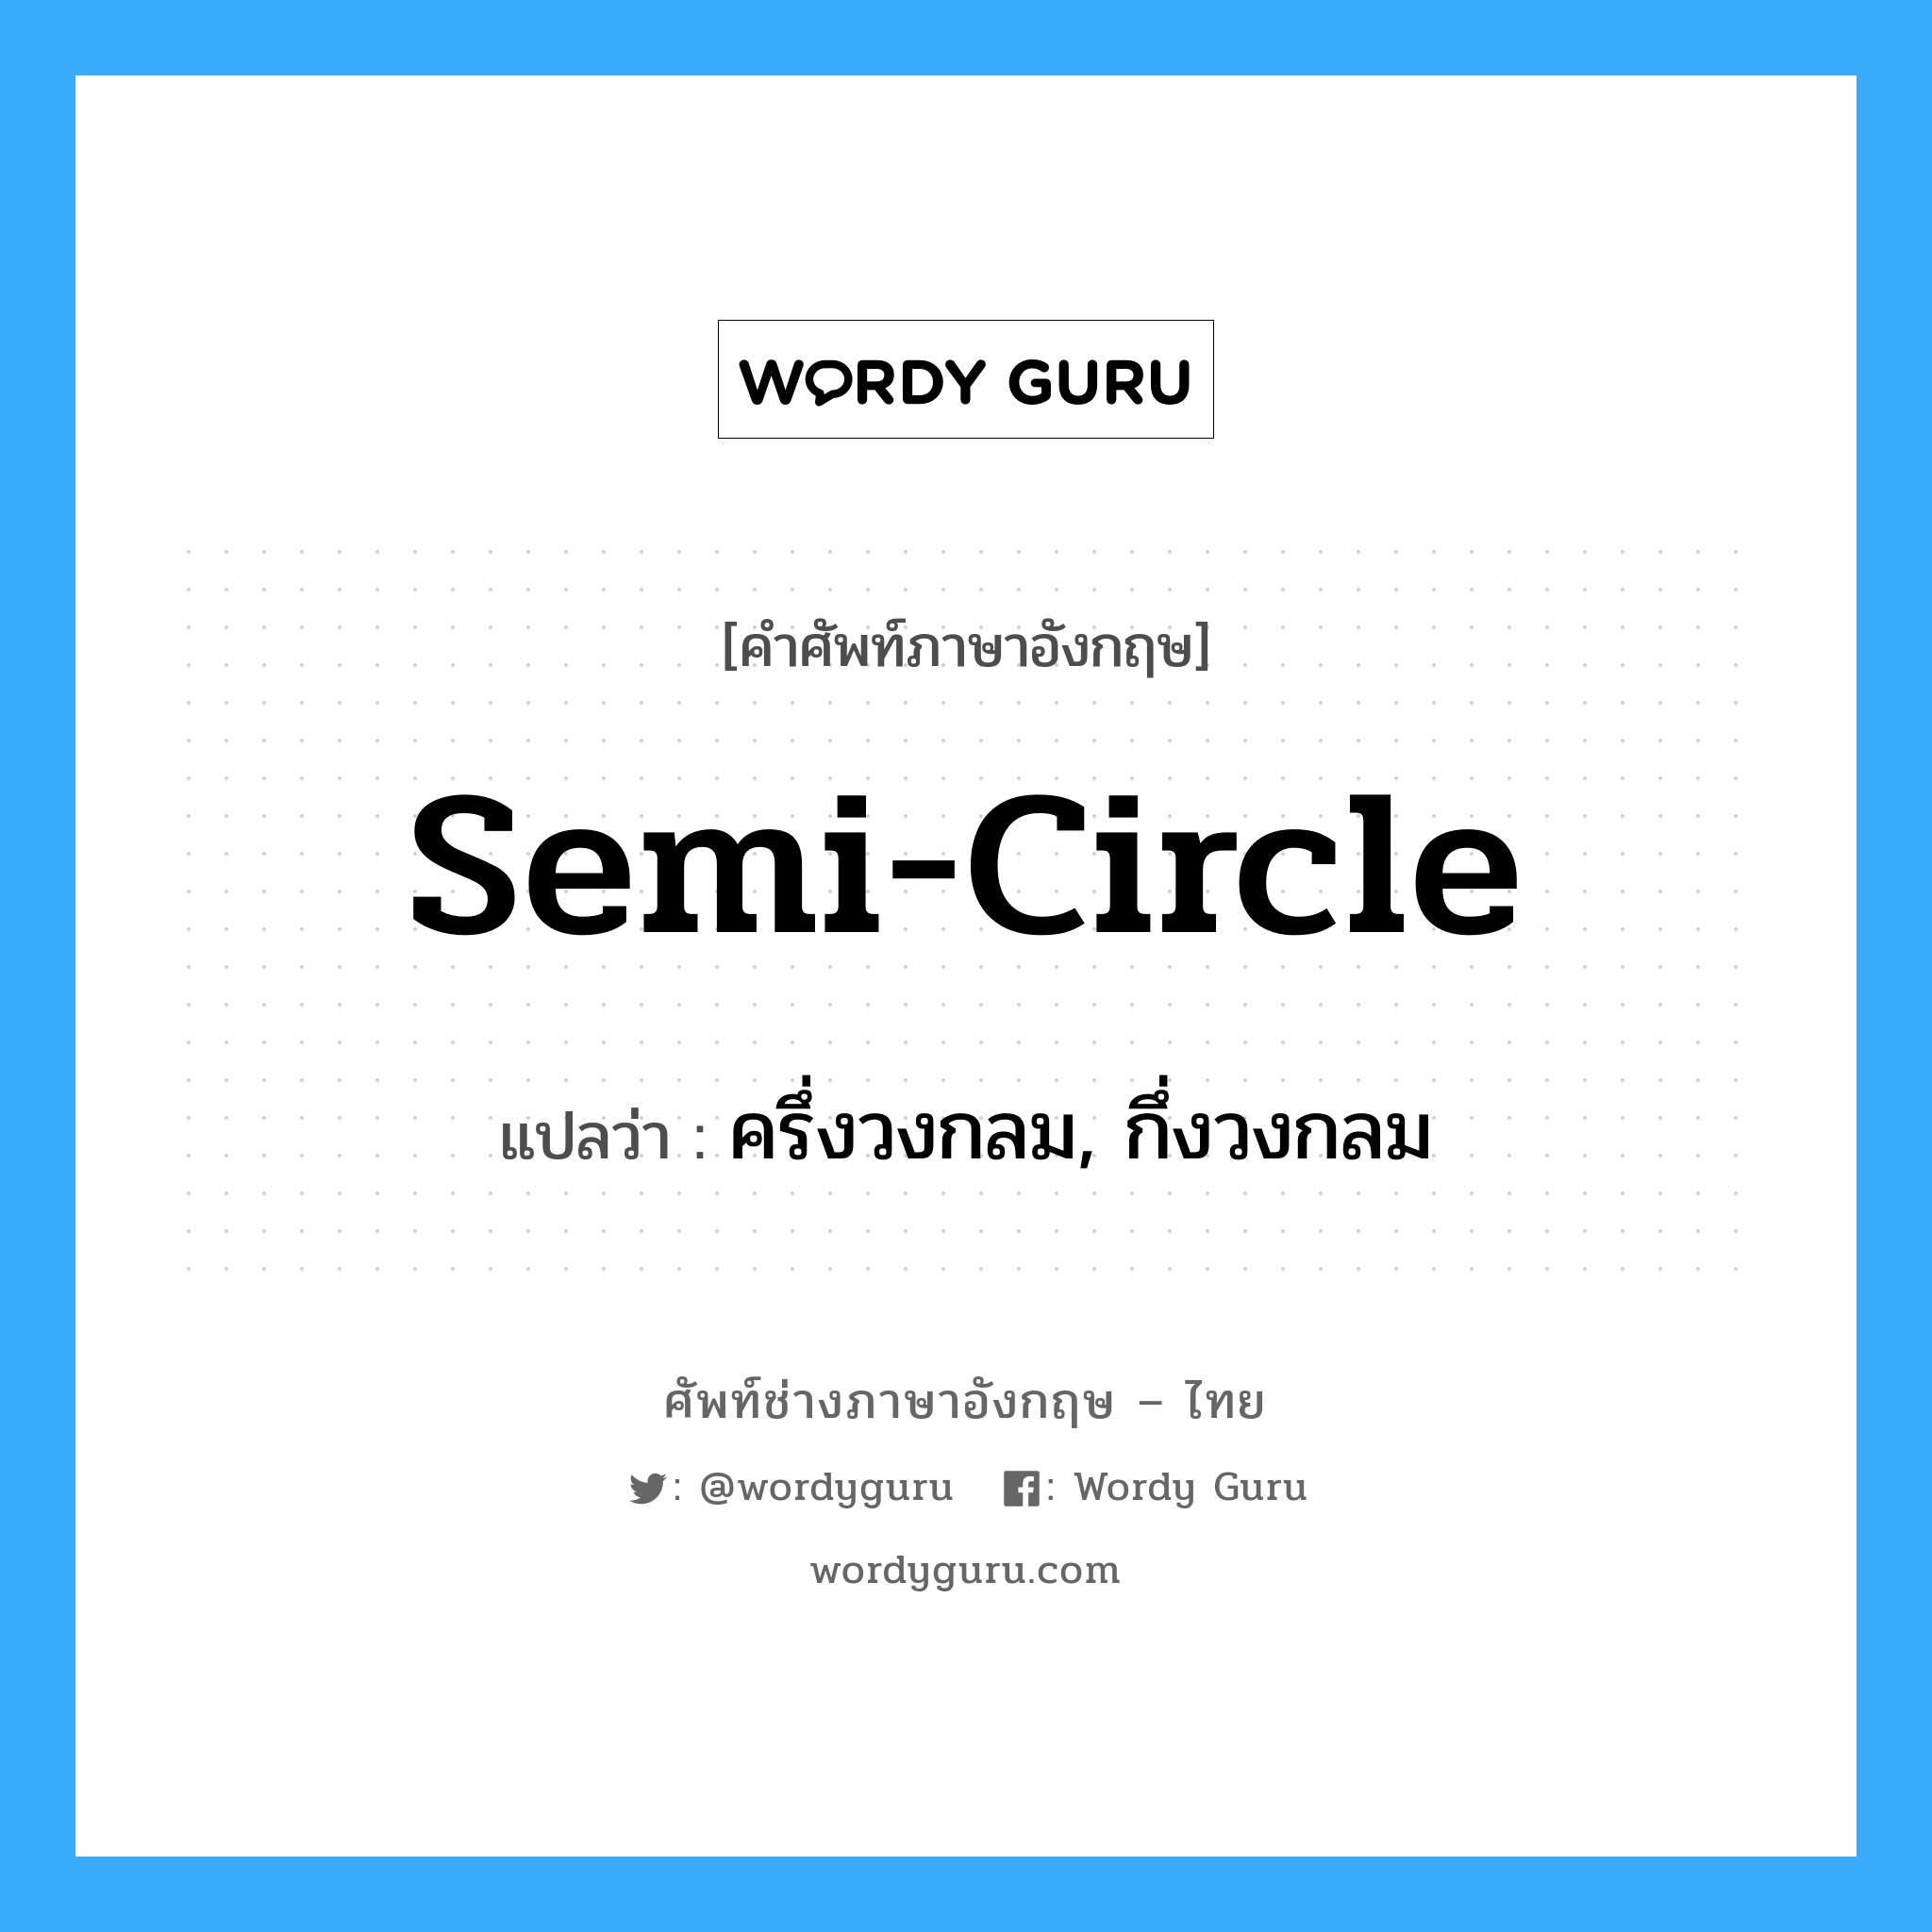 ครึ่งวงกลม, กึ่งวงกลม ภาษาอังกฤษ?, คำศัพท์ช่างภาษาอังกฤษ - ไทย ครึ่งวงกลม, กึ่งวงกลม คำศัพท์ภาษาอังกฤษ ครึ่งวงกลม, กึ่งวงกลม แปลว่า semi-circle